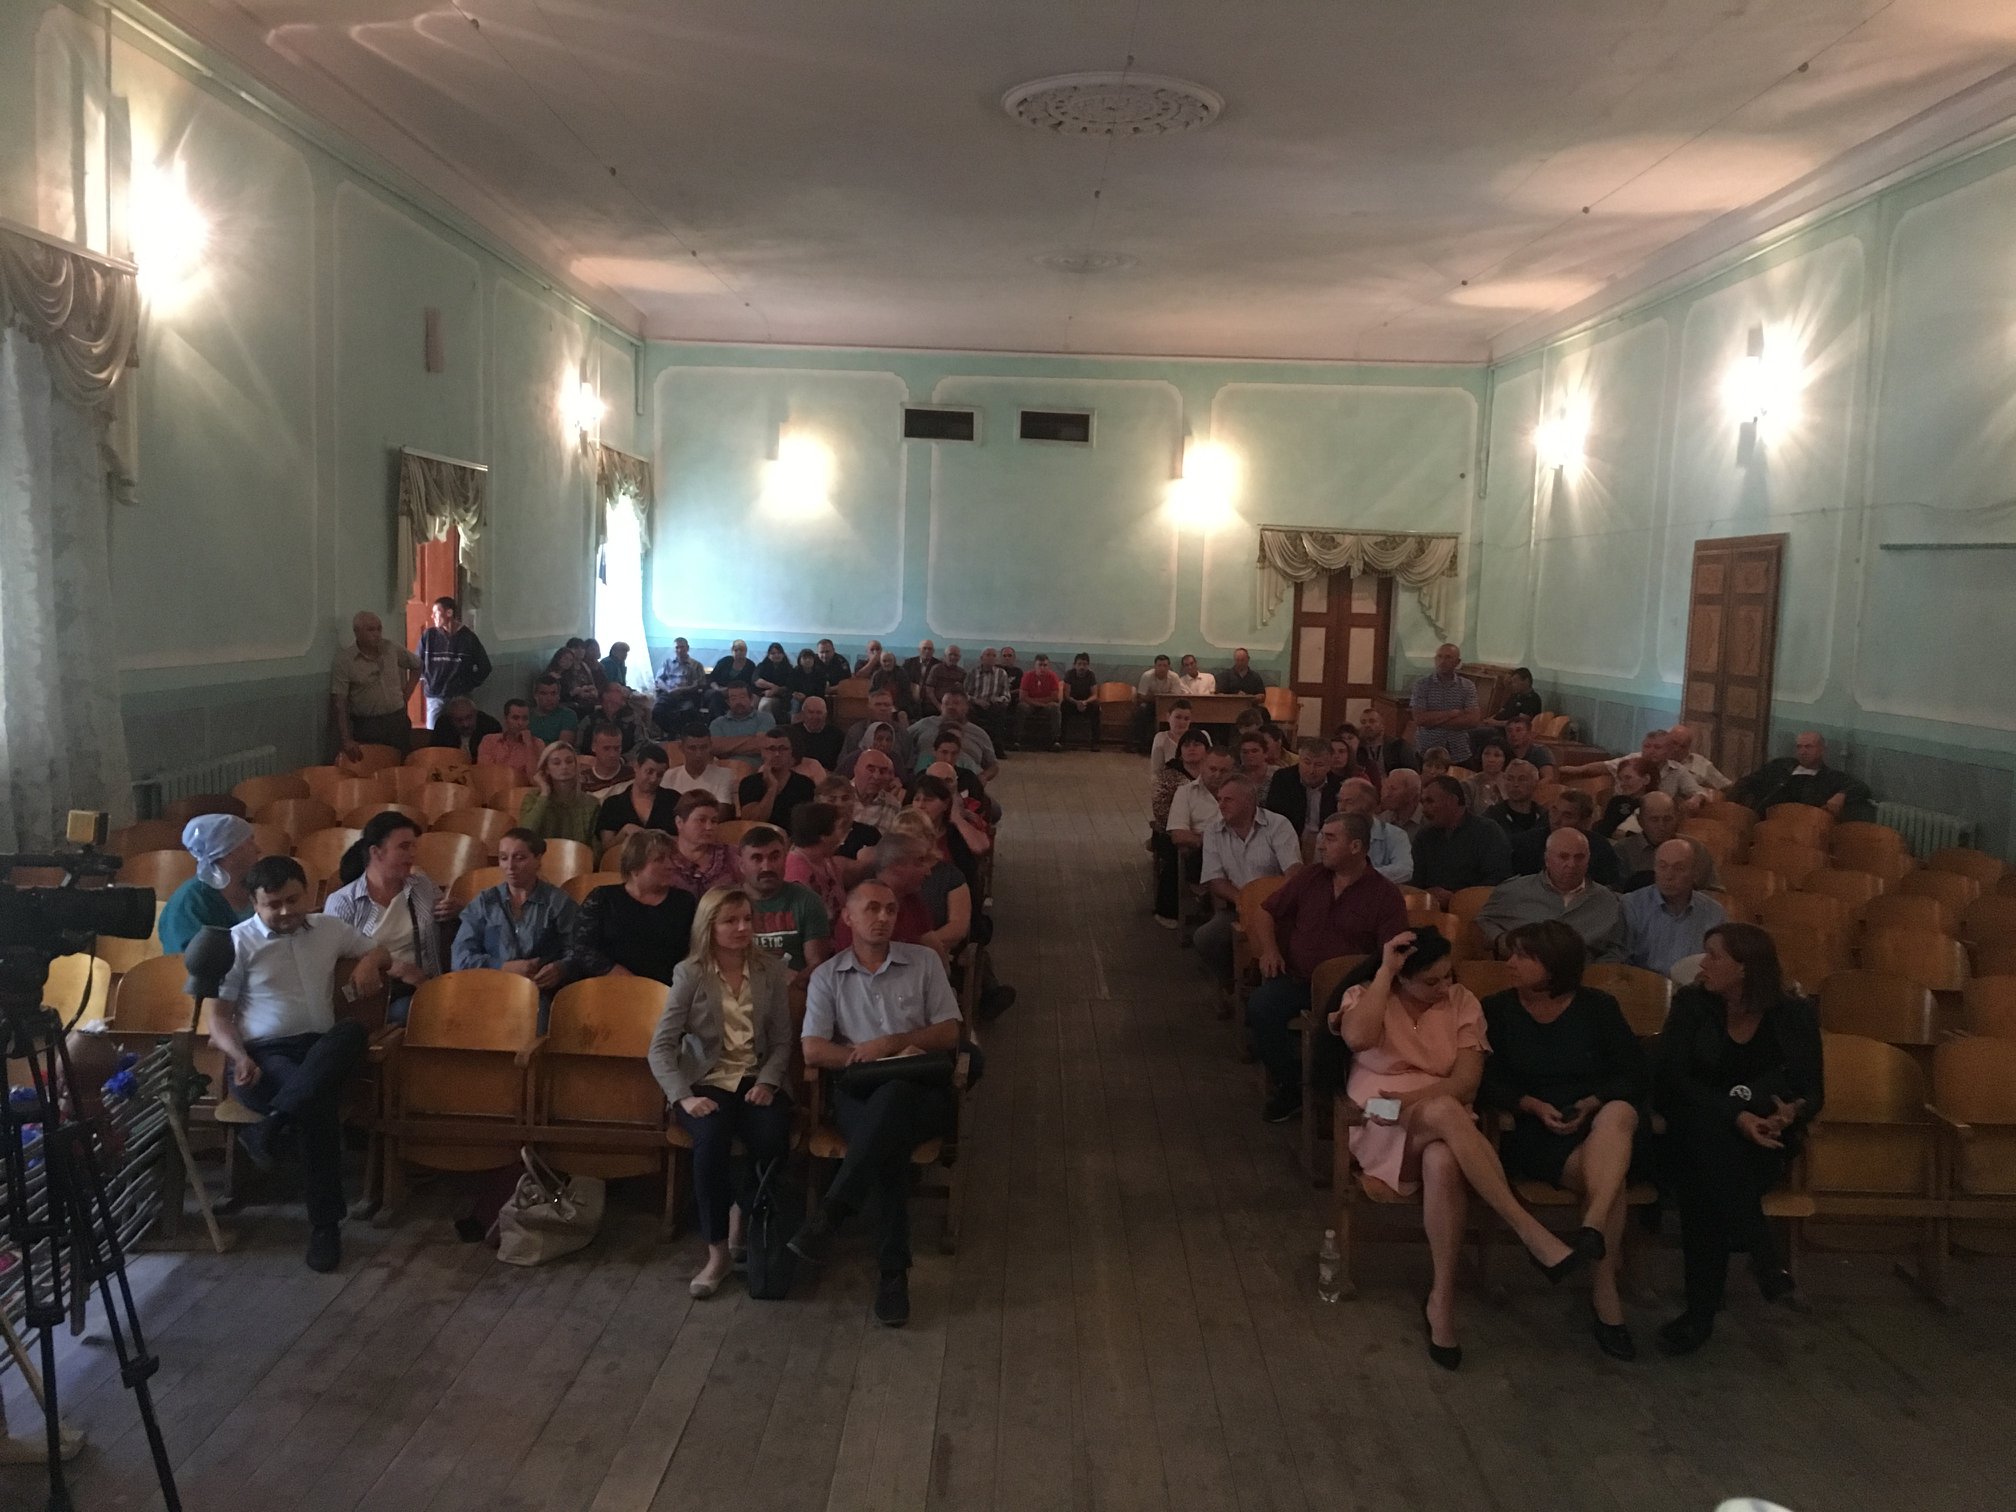  Шість депутатів Зеленецької сільської ради написали заяви на складання повноважень, щоб тільки не приймати рішення про об'єднання з іншими селами 